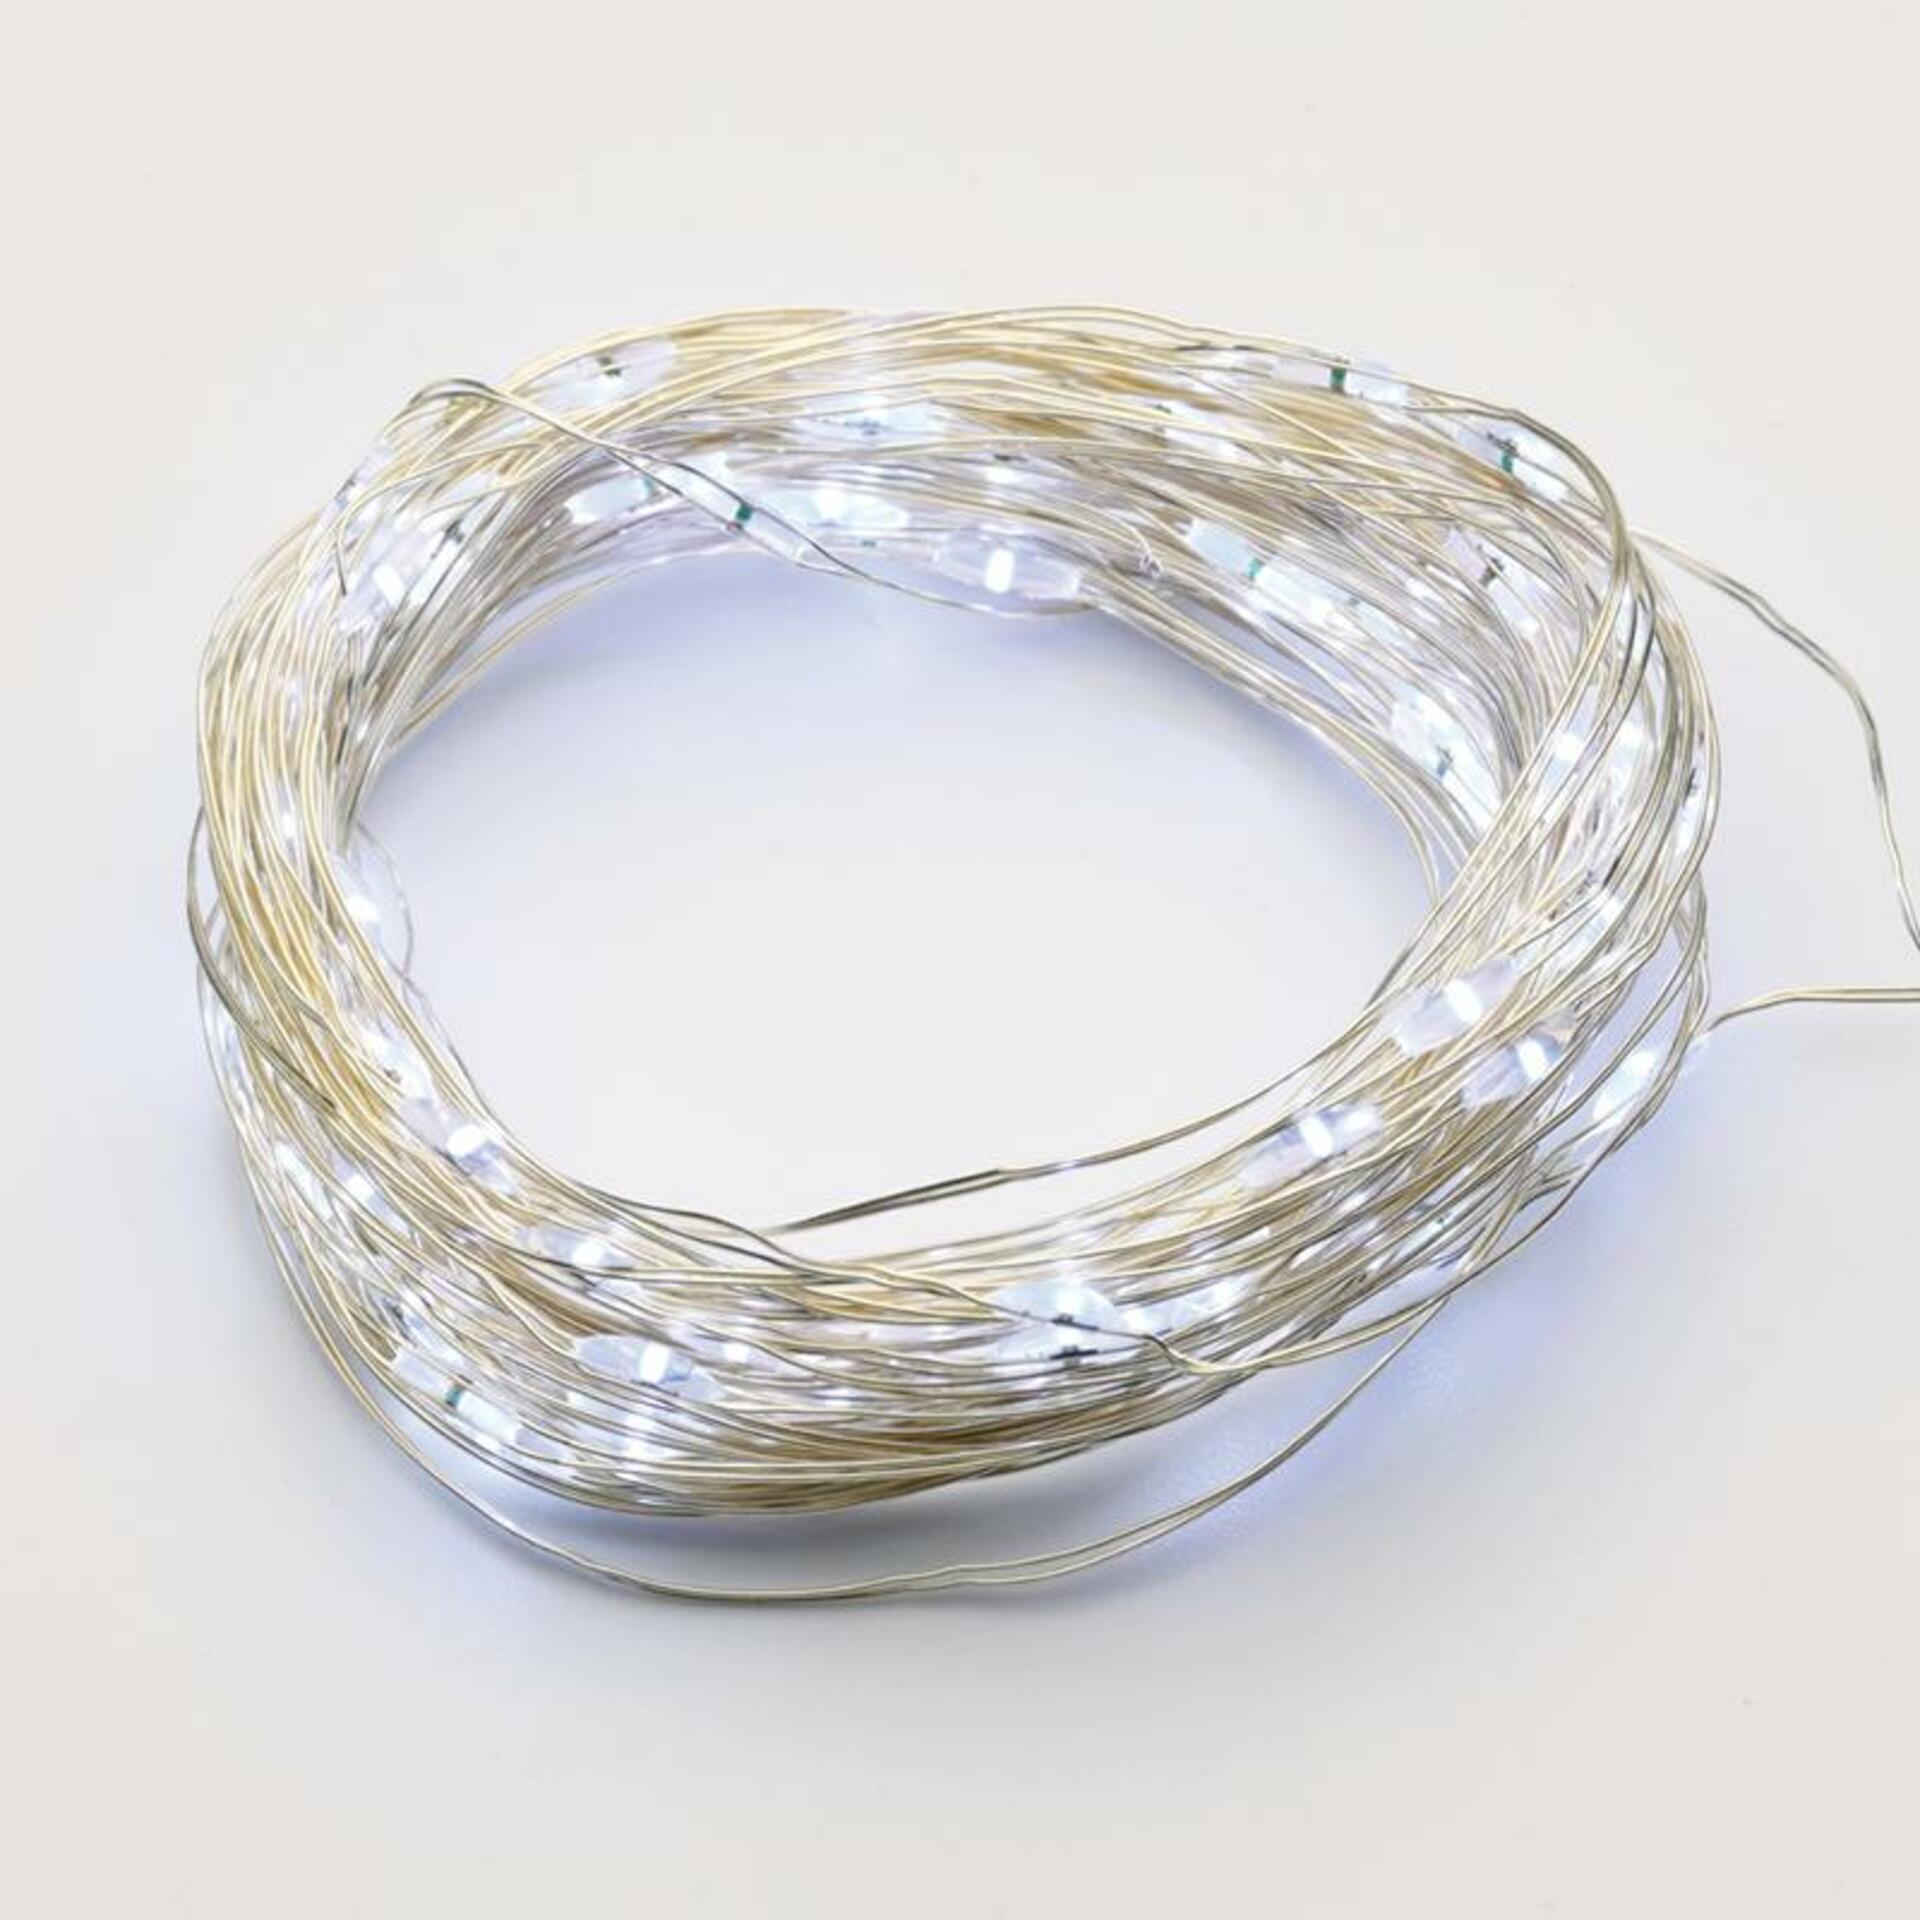 Levně ACA Lighting 100 LED dekorační řetěz CW stříbrný měďený kabel 220-240V + 8 funkcí IP44 10m+3m 1.8W X01100212